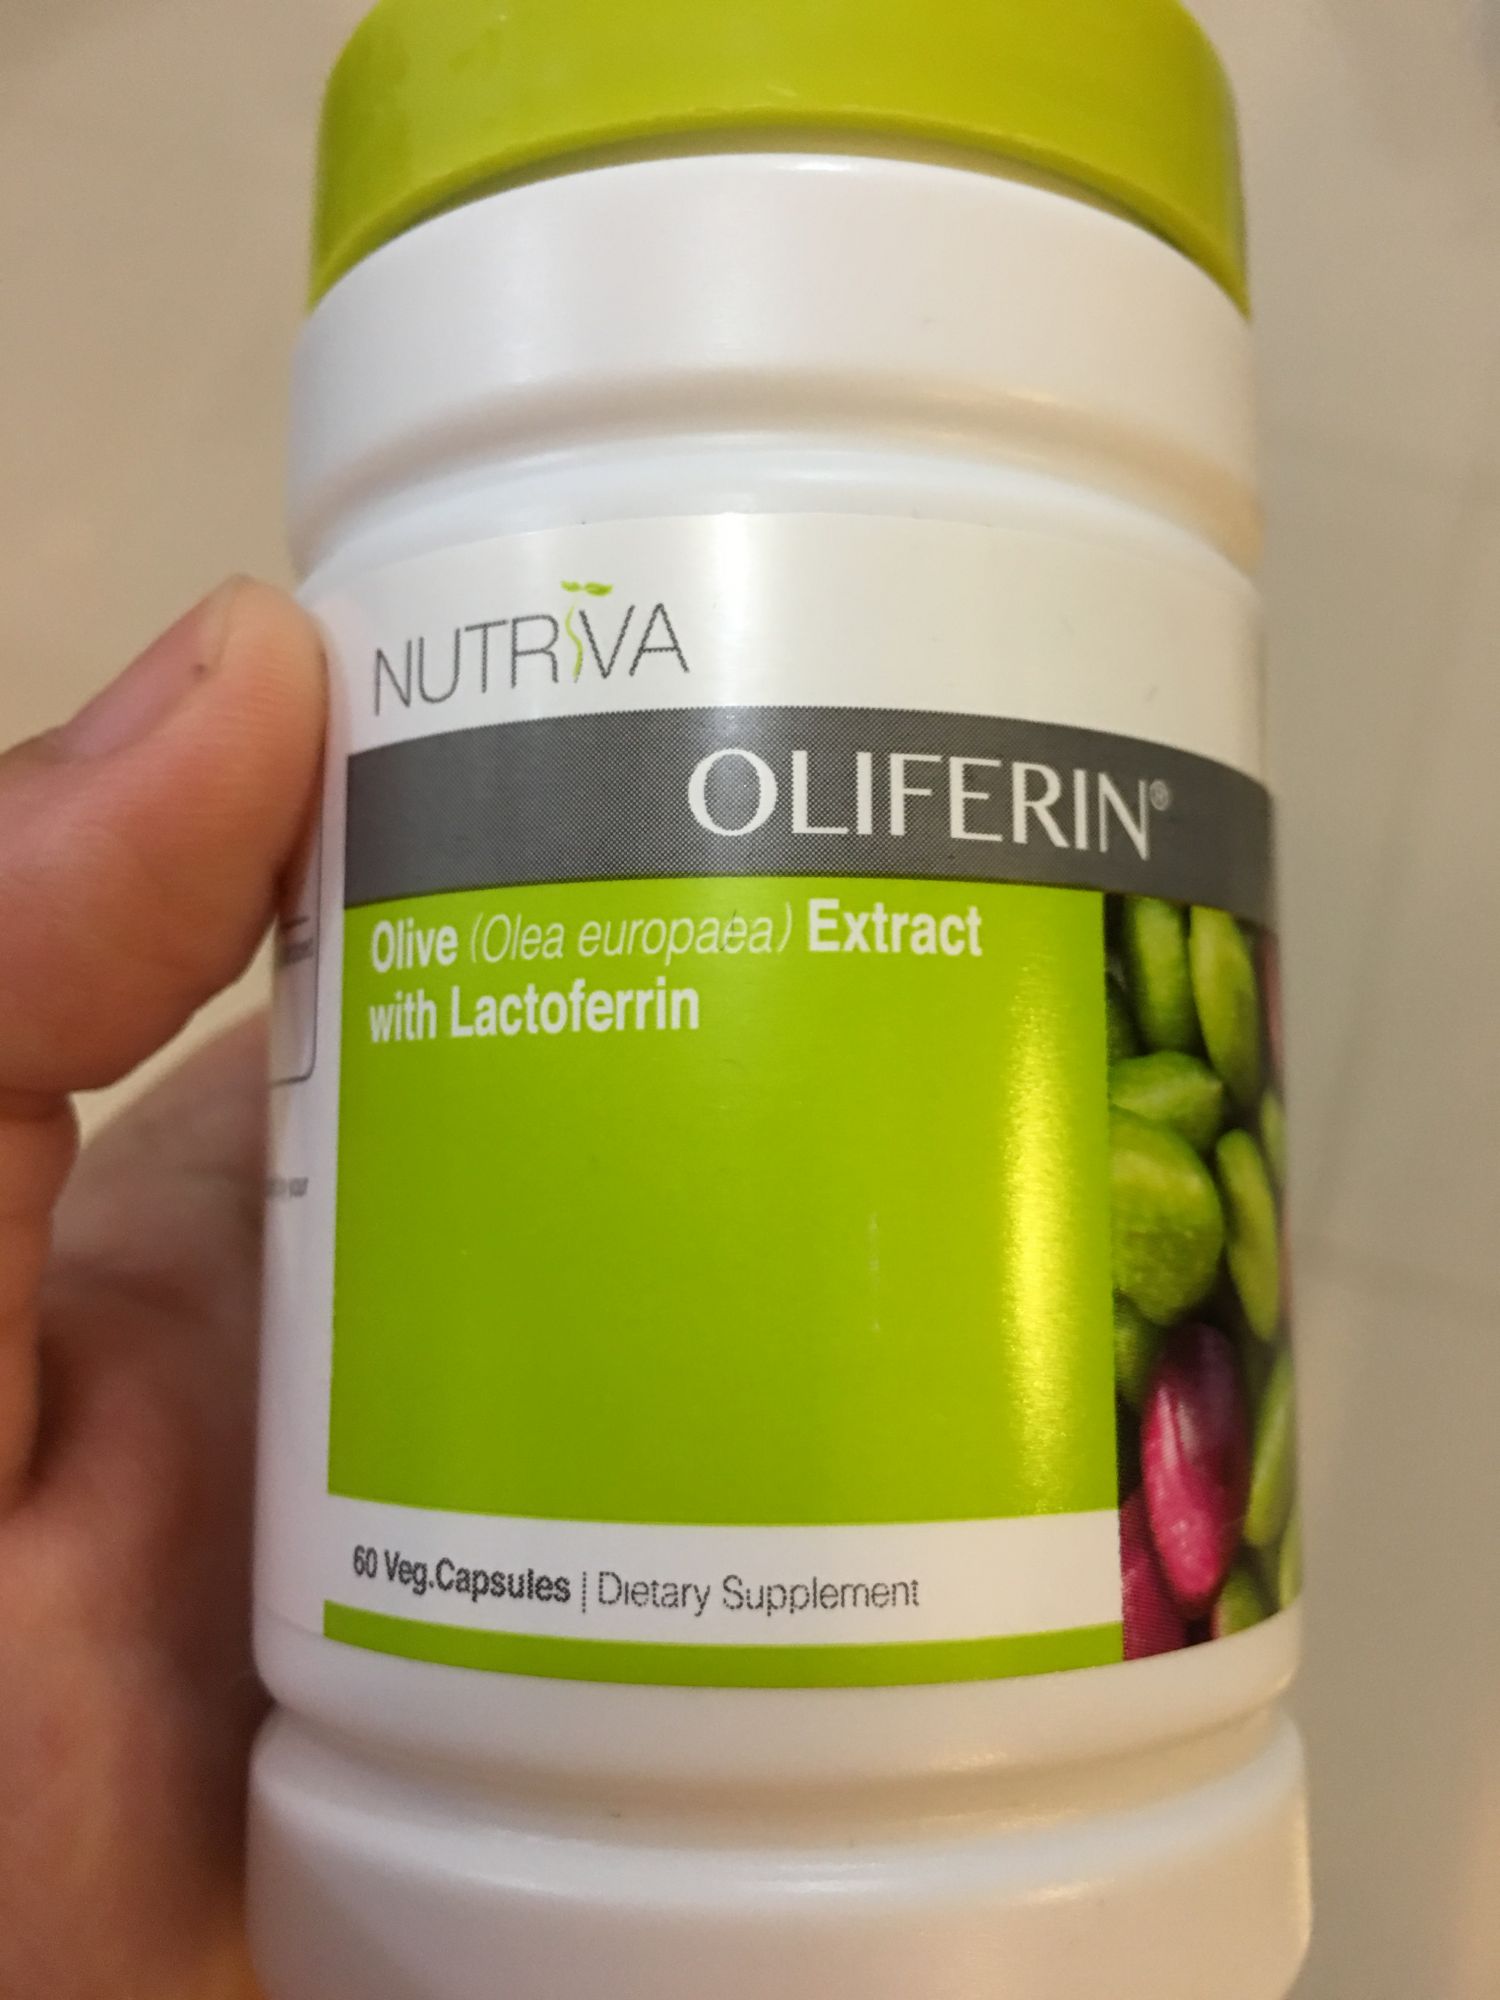 Nutriva Oliferin® reviews